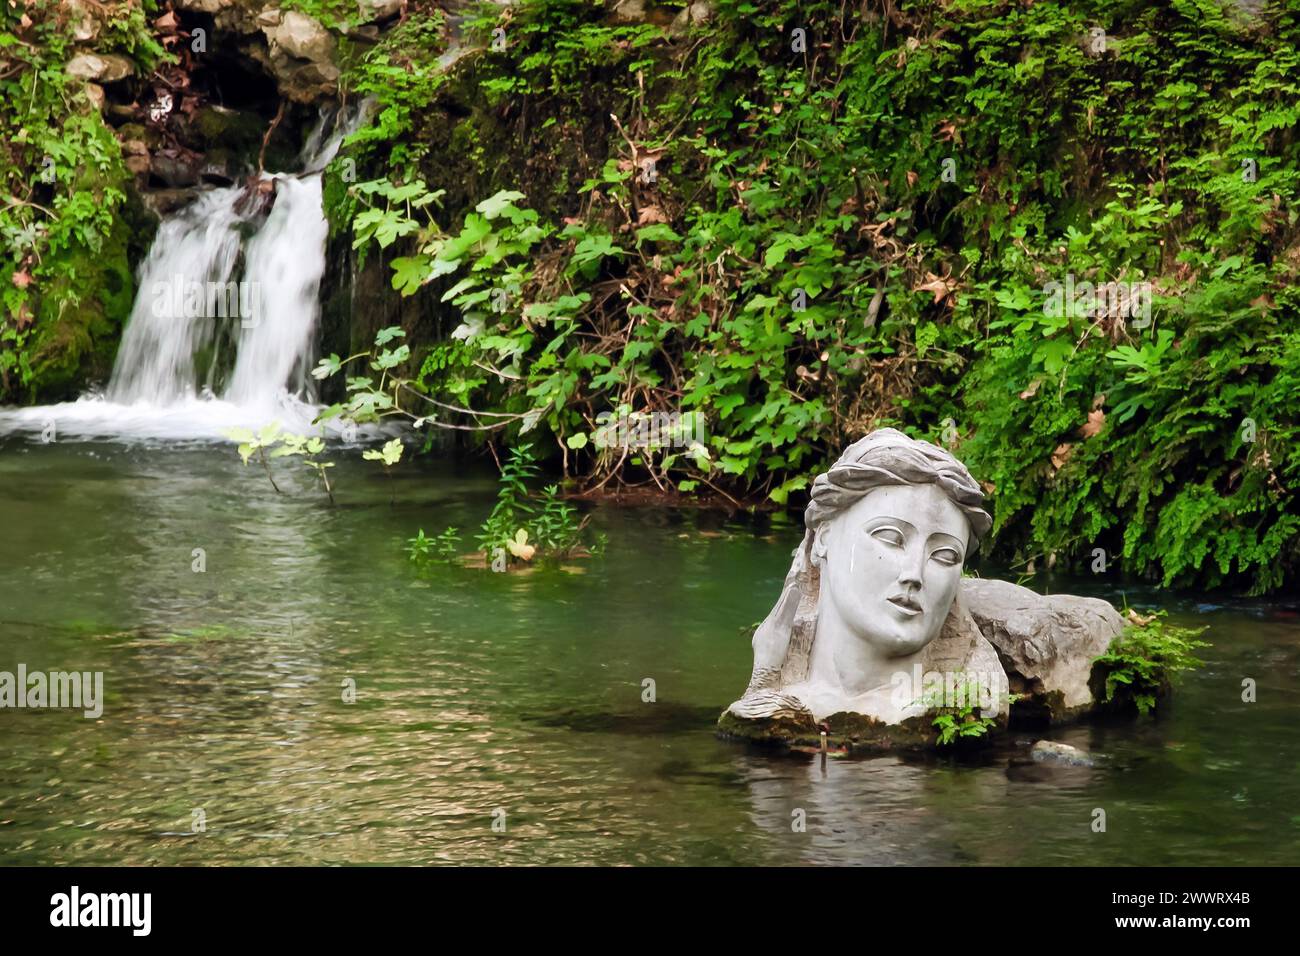 Fiume Erkyna, uno dei due fiumi di nome femminile in Grecia, nella città di Livadeia, Grecia centrale. Il busto della dea personifica Erkyna. Foto Stock